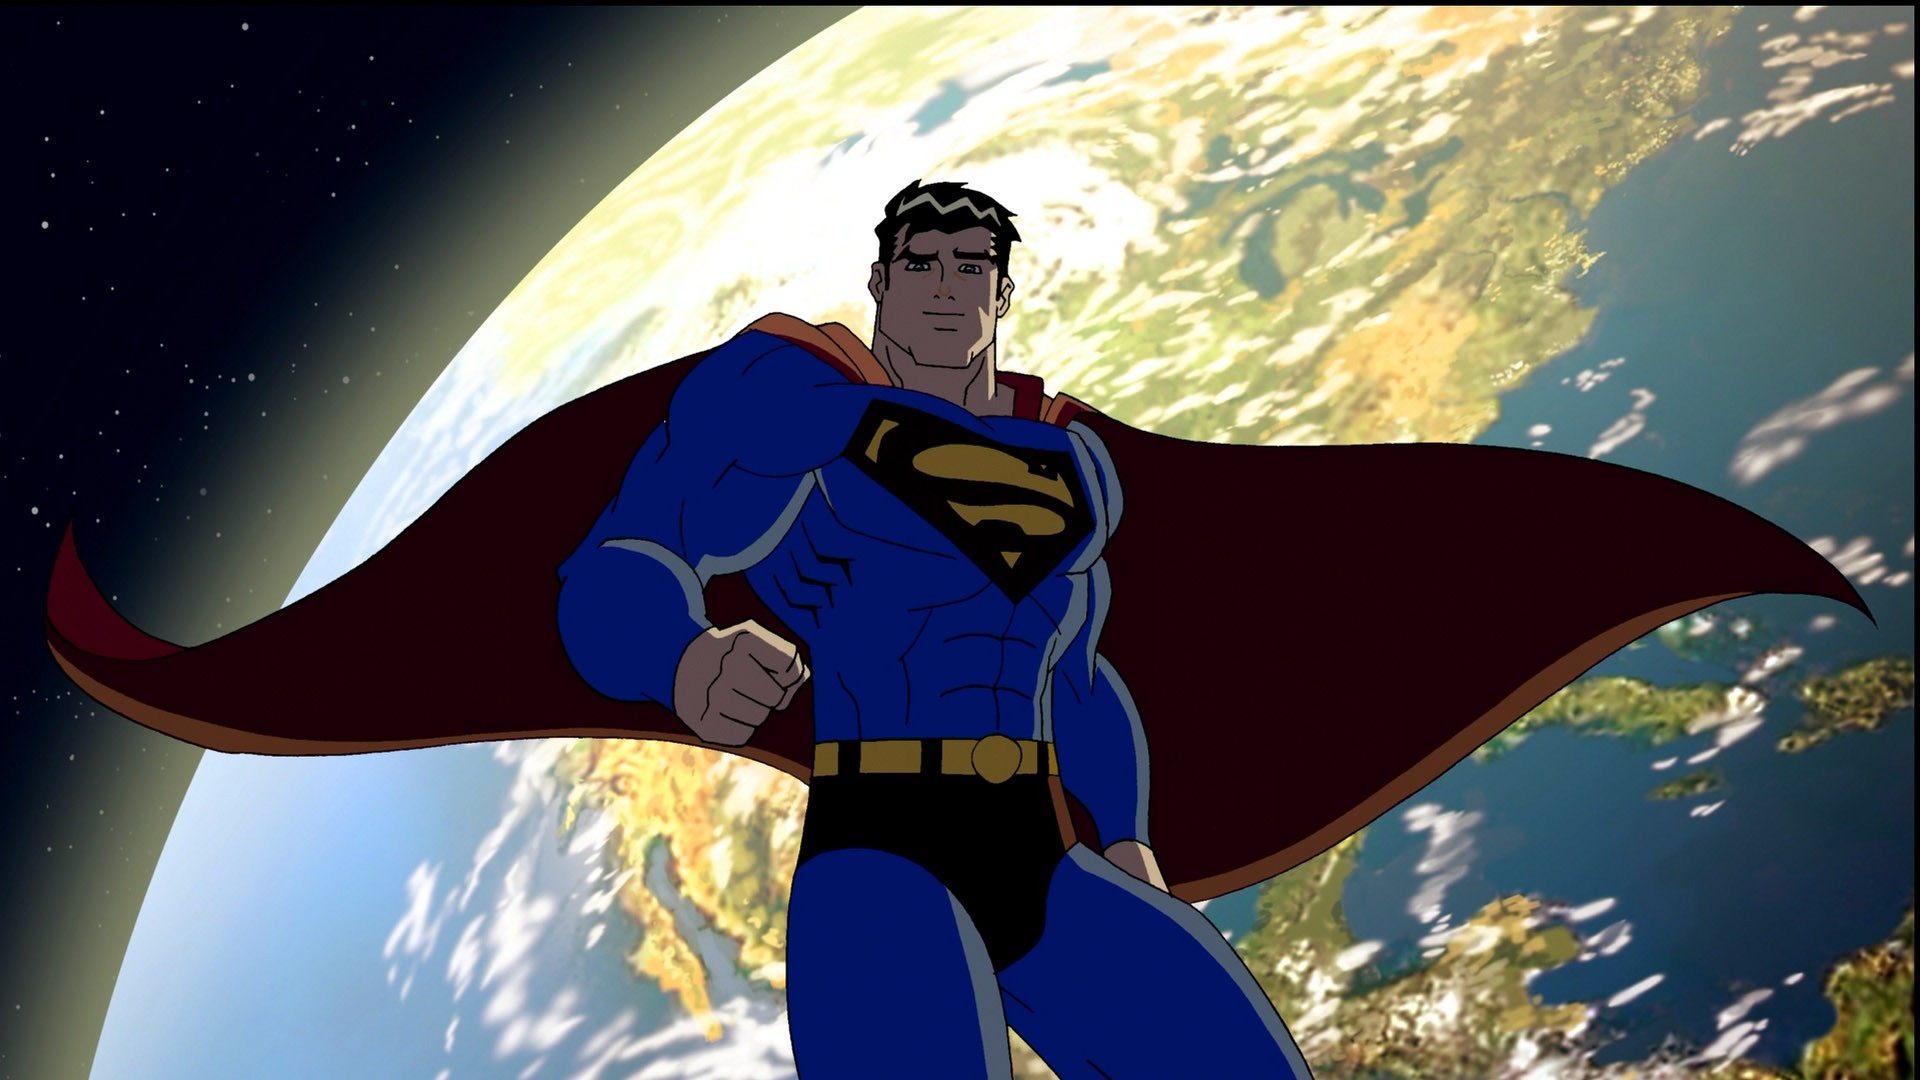 Скачать обои Супермен/бэтмен: Враги Общества на телефон бесплатно